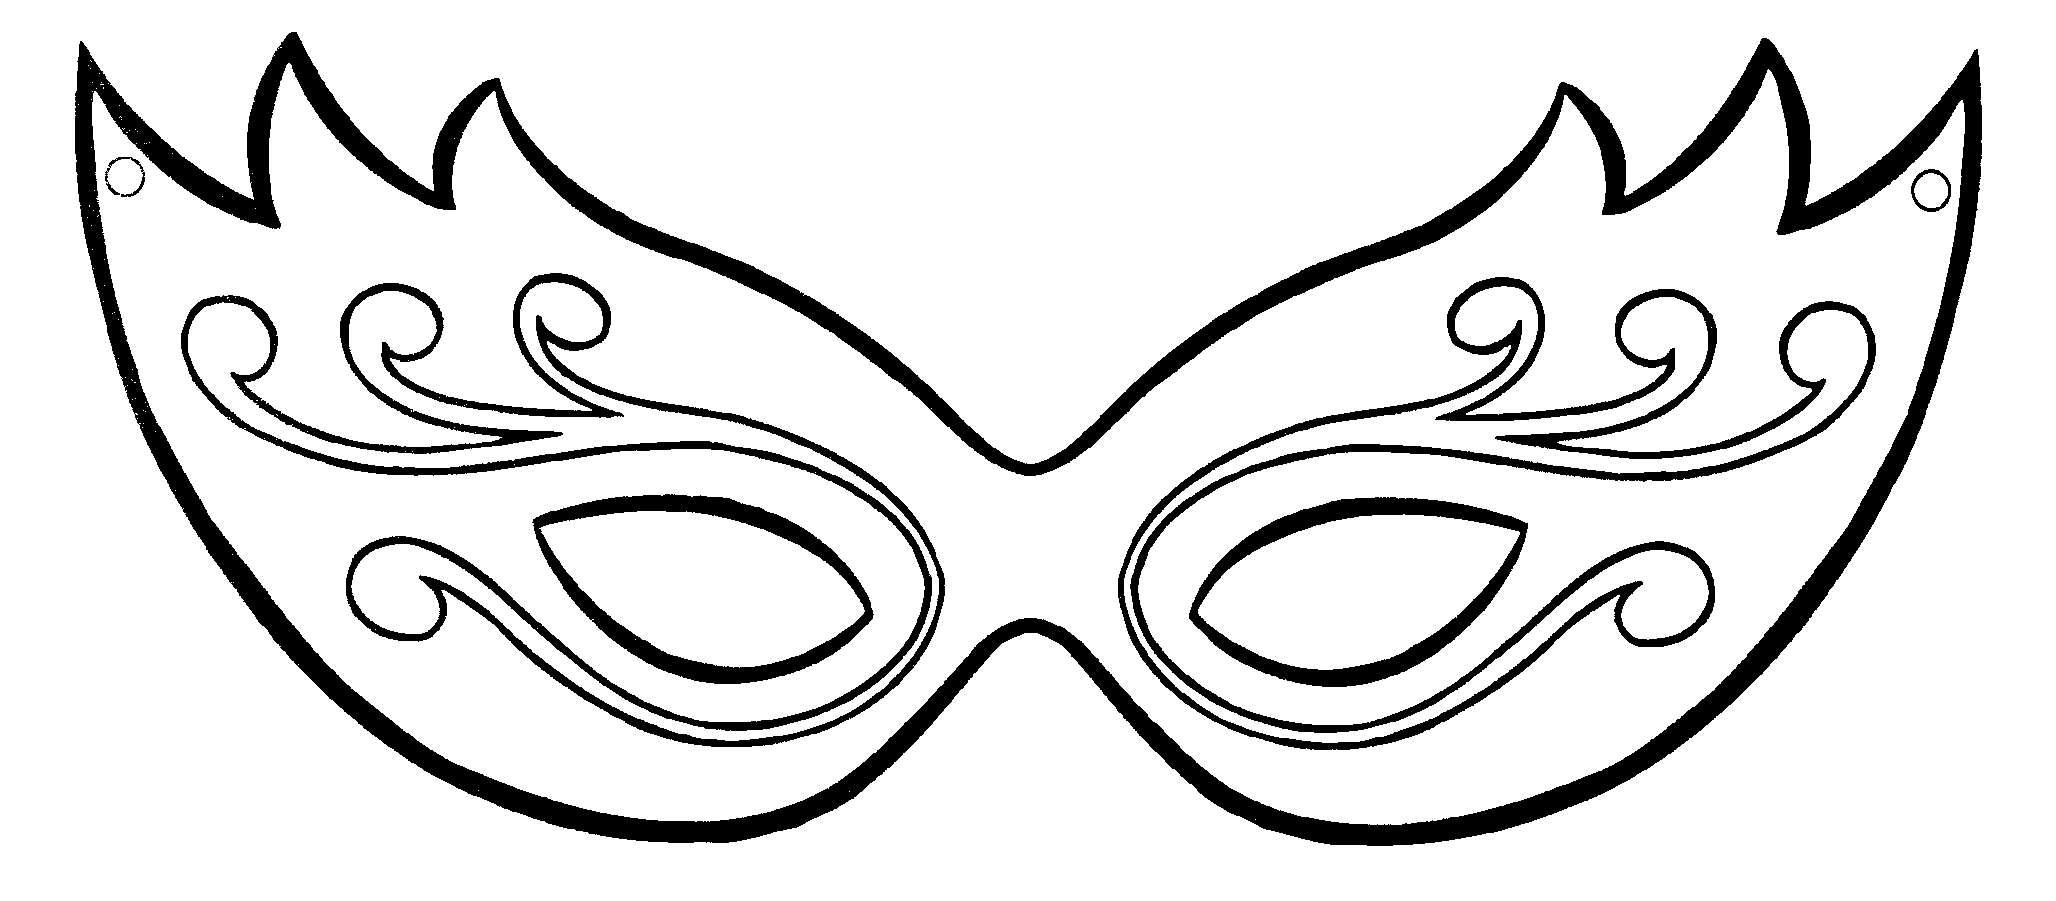 Moldes de máscara de carnaval | Heno, Dibujo y Ems